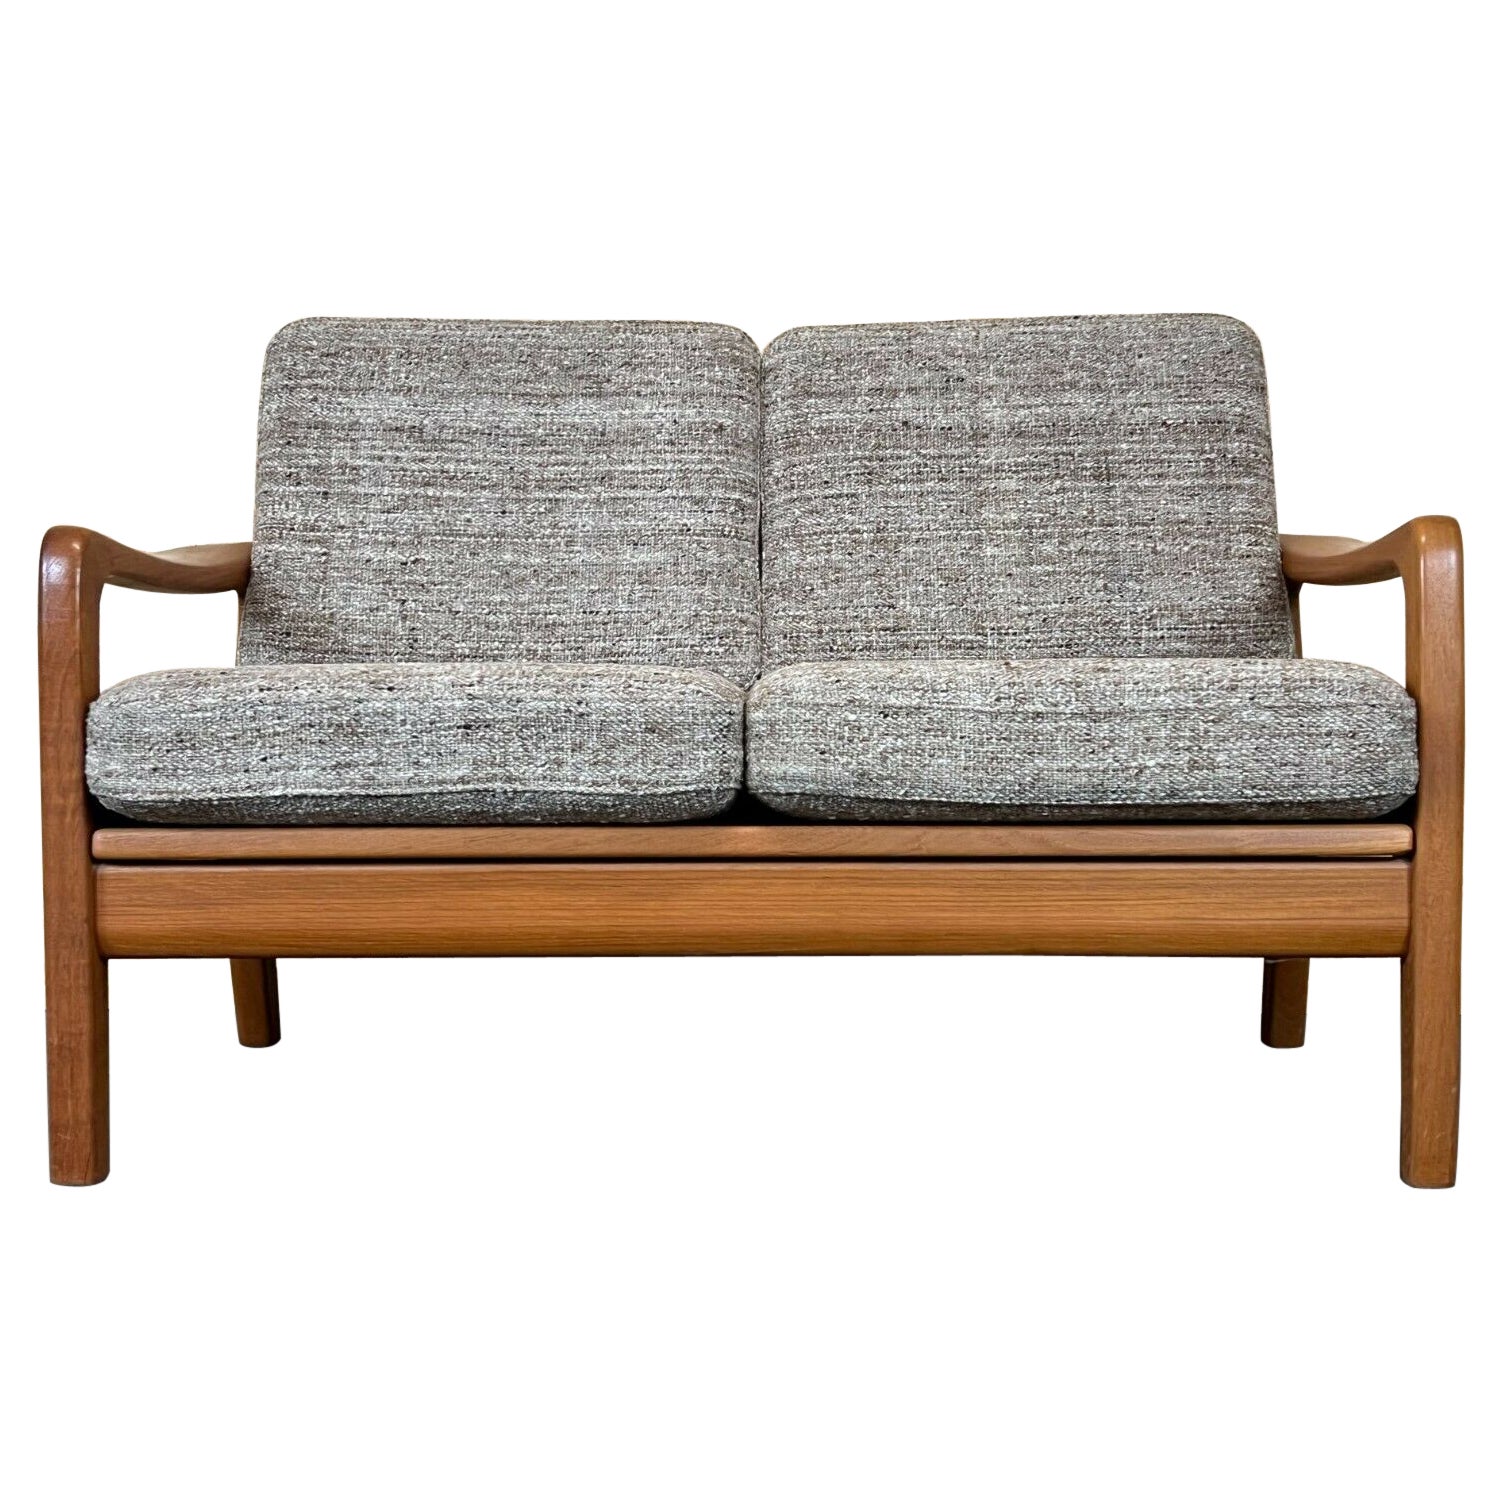 60s 70s Teak Sofa 2 Seater Couch J. Kristensen Danish Denmark Design 